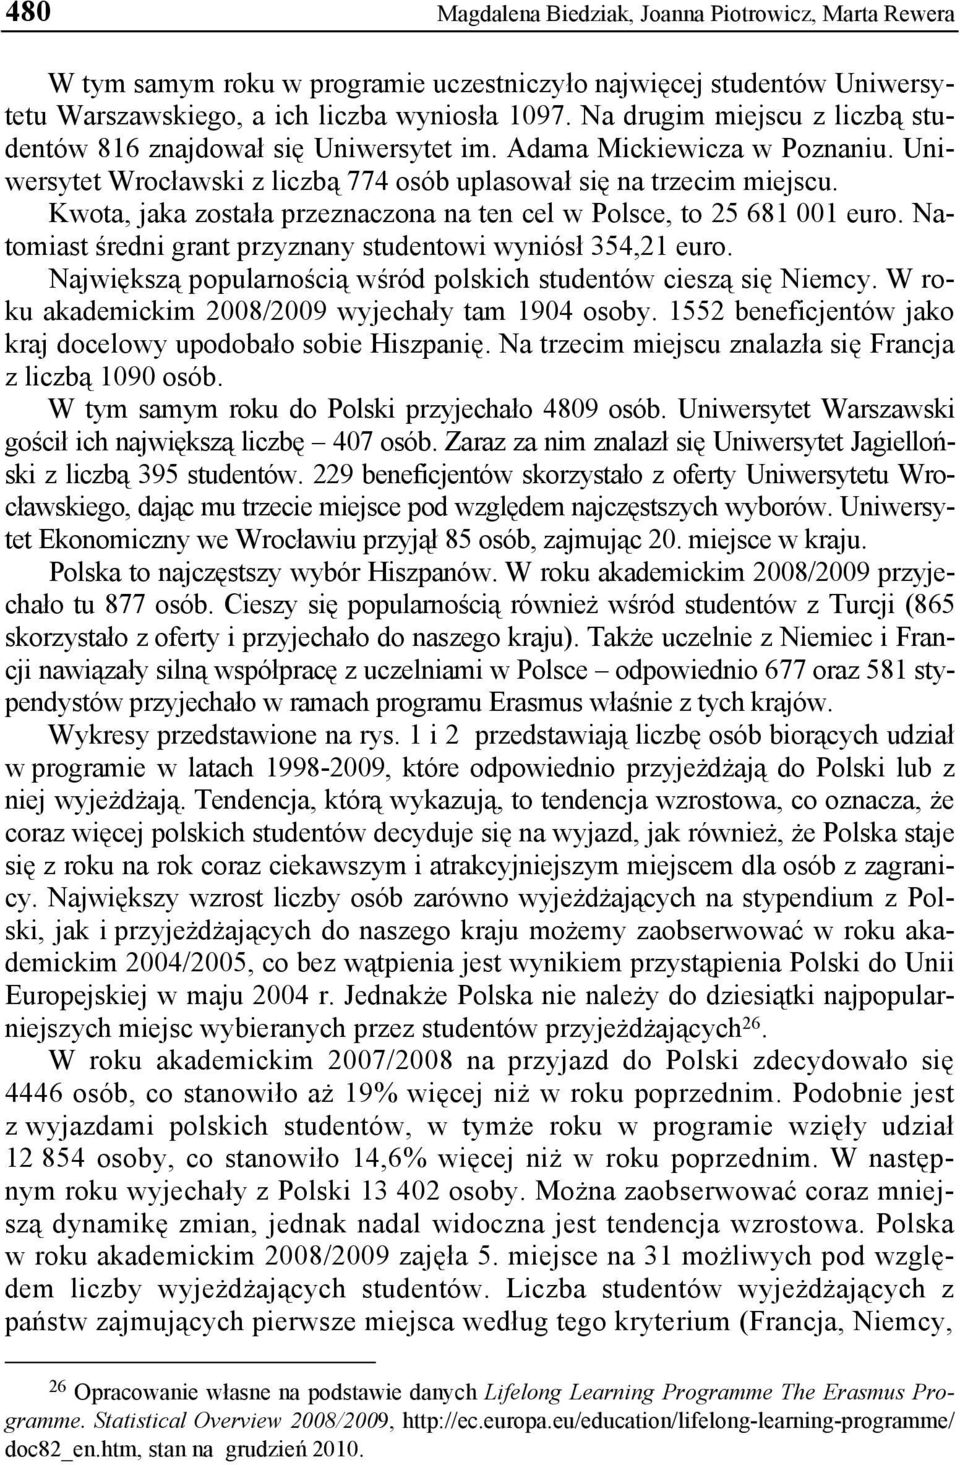 Kwota, jaka została przeznaczona na ten cel w Polsce, to 25 681 001 euro. Natomiast średni grant przyznany studentowi wyniósł 354,21 euro.